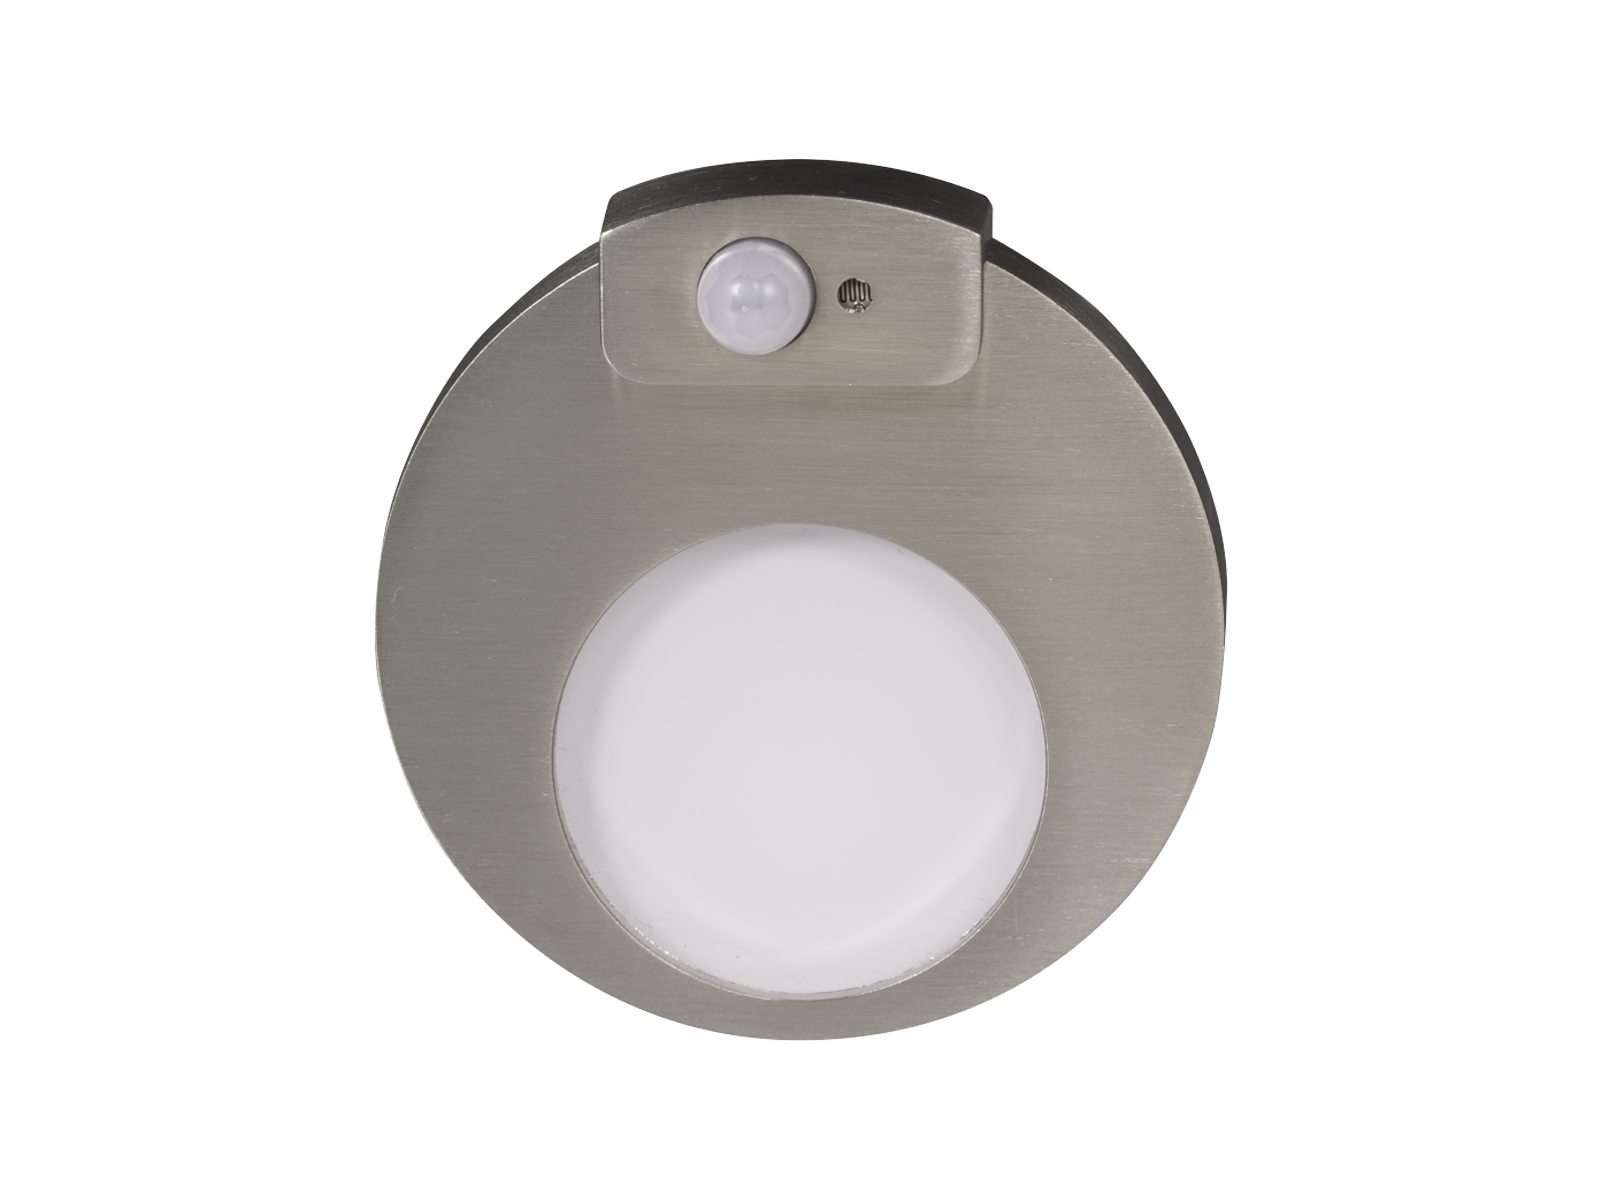 Svítidlo LED se senzorem pod omítku LEDIX MUNA 230 V AC, kartáčovaná ocel, neutrální bílá, IP20